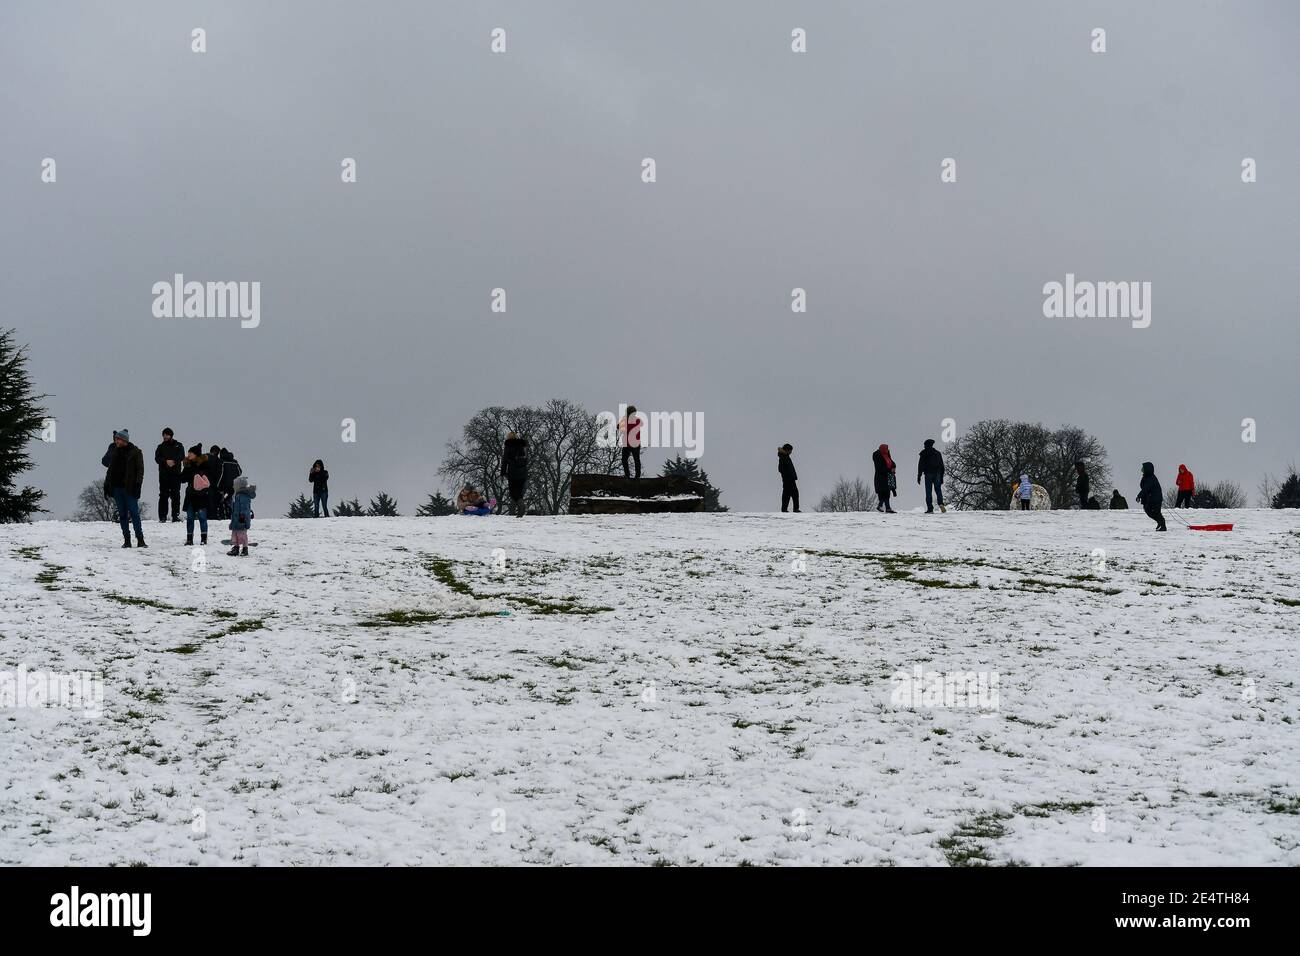 Prima nevicata a Watford durante l'inverno 2021. 7 cm di neve caddero nello spazio di 3 ore. Ha dato l'opportunità a molte persone di dirigersi verso i parchi per esplorare il paese delle meraviglie invernali. La distanza sociale era un must, ma alcune aree hanno avuto molte persone. Foto Stock